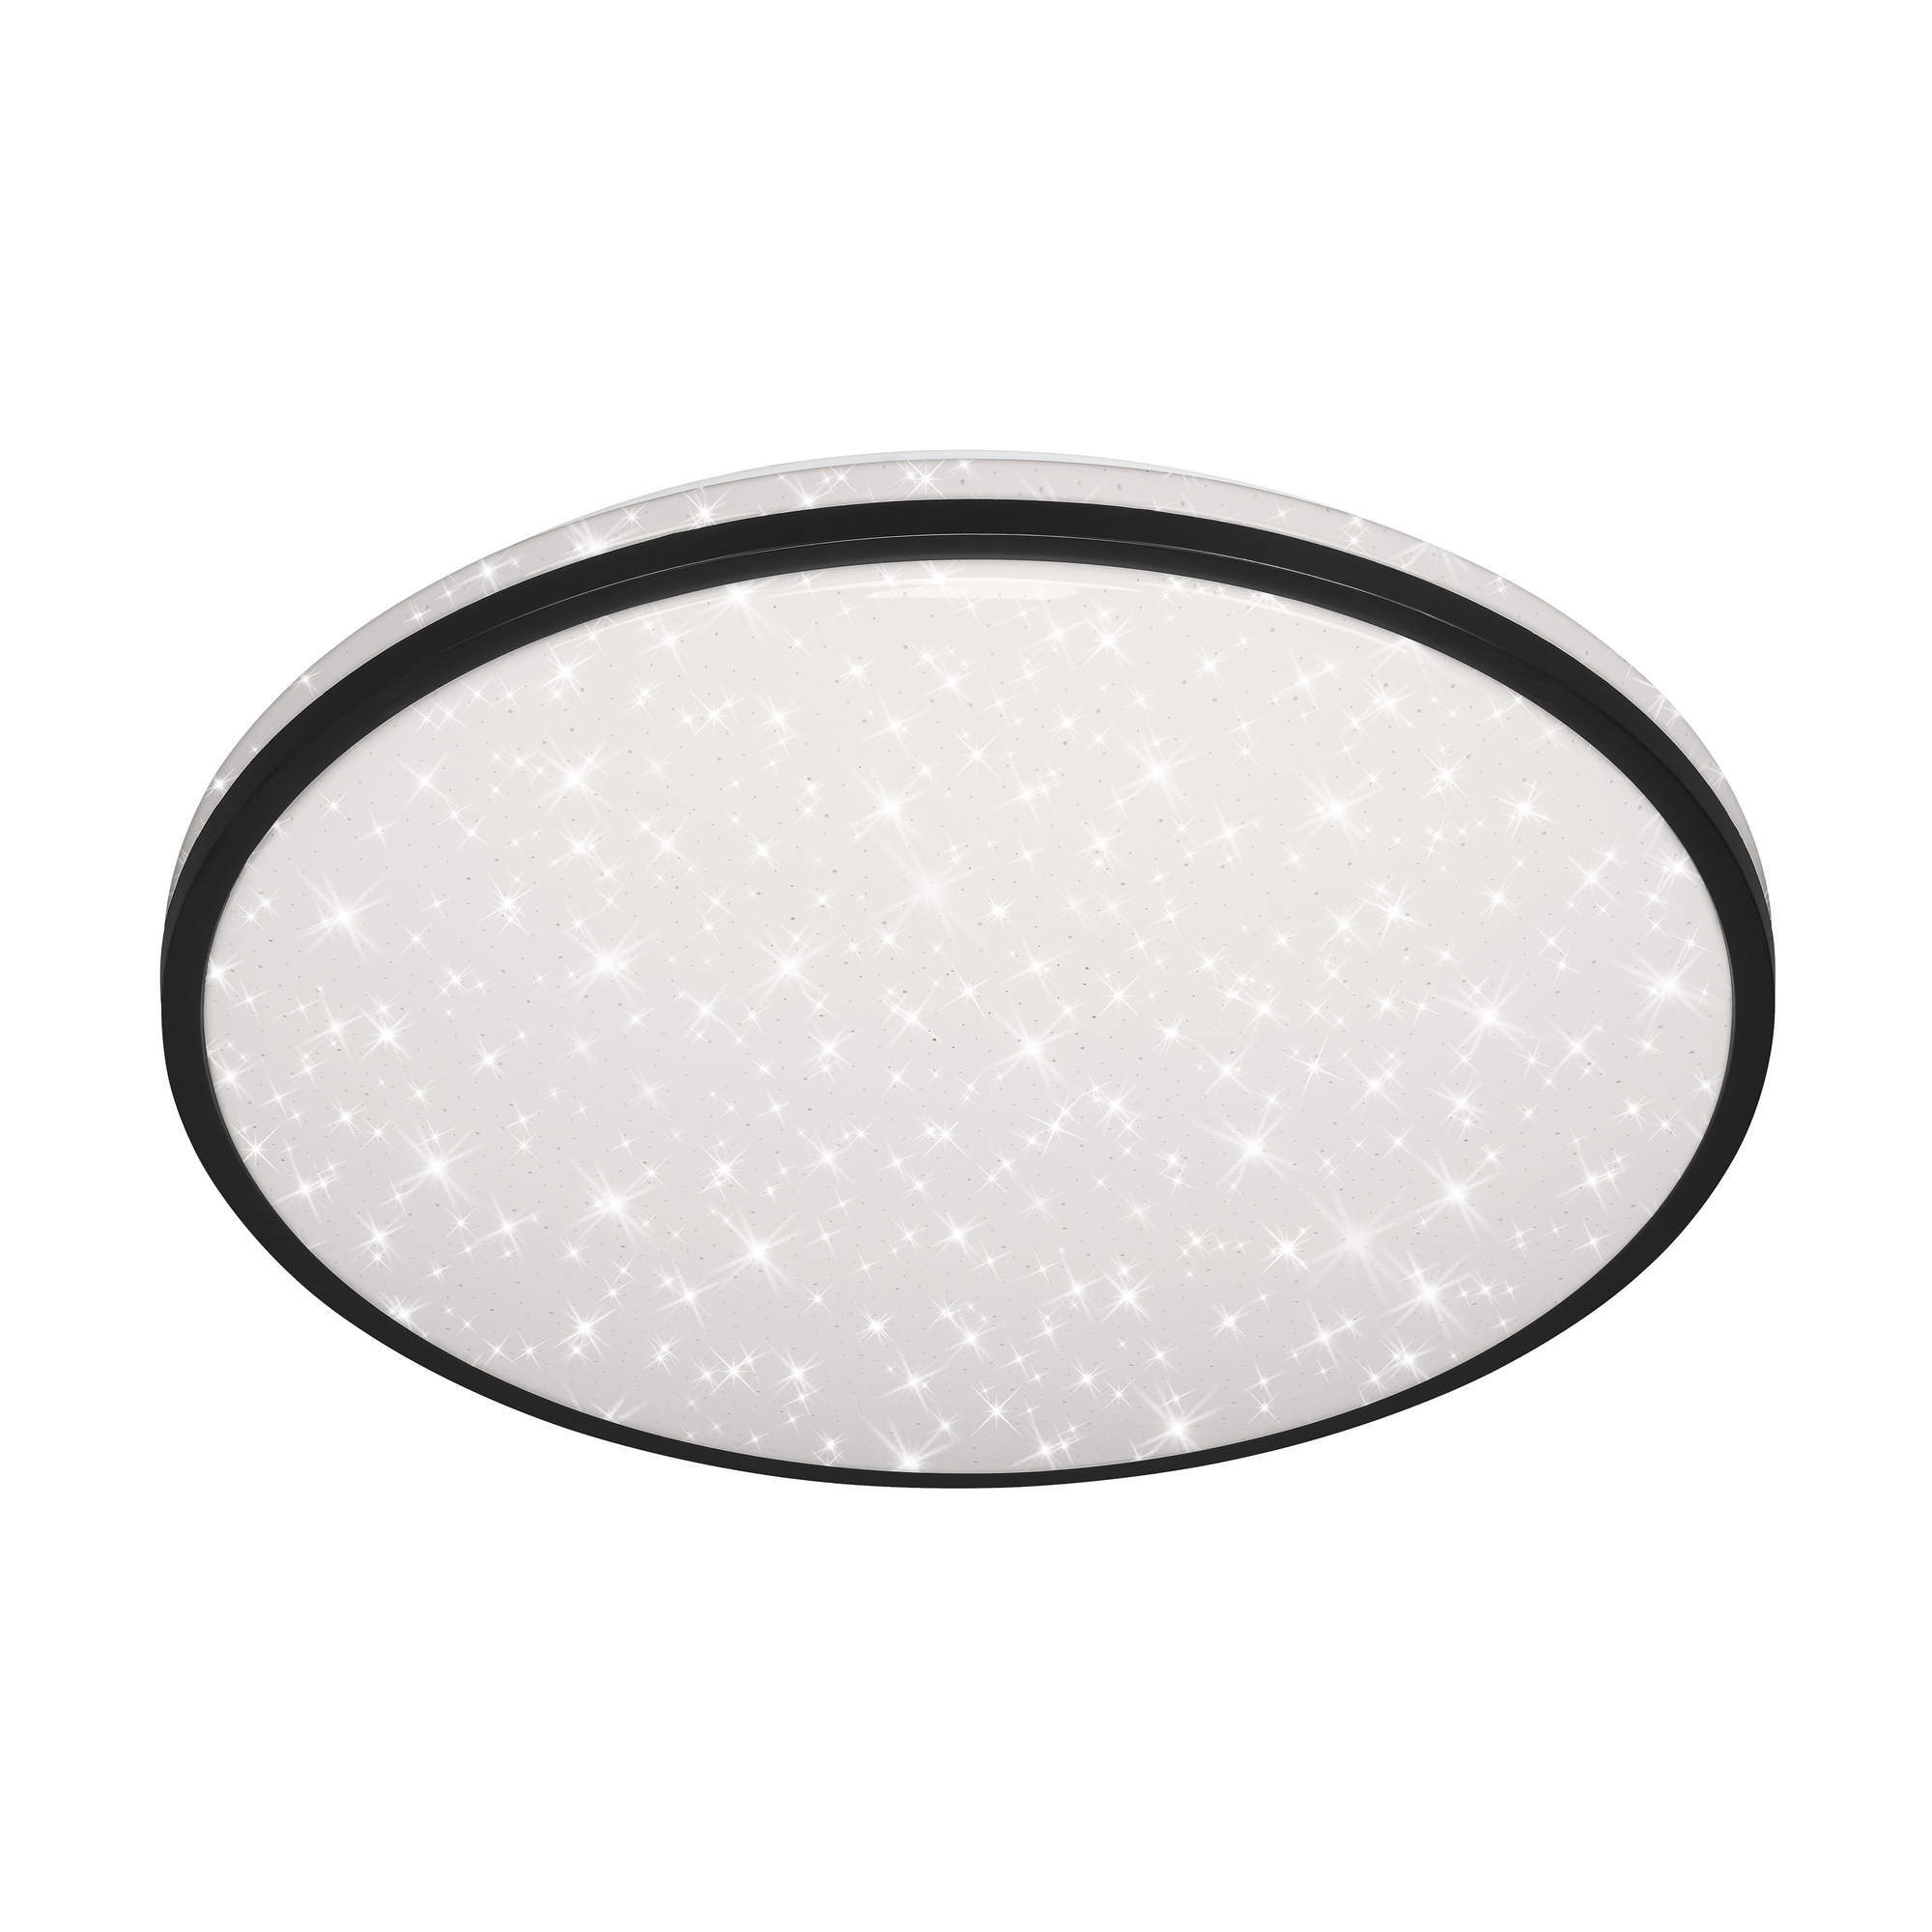 LED-Deckenleuchte 'Skizo' schwarz/weiß 4400 lm Ø 49,2 cm + product picture